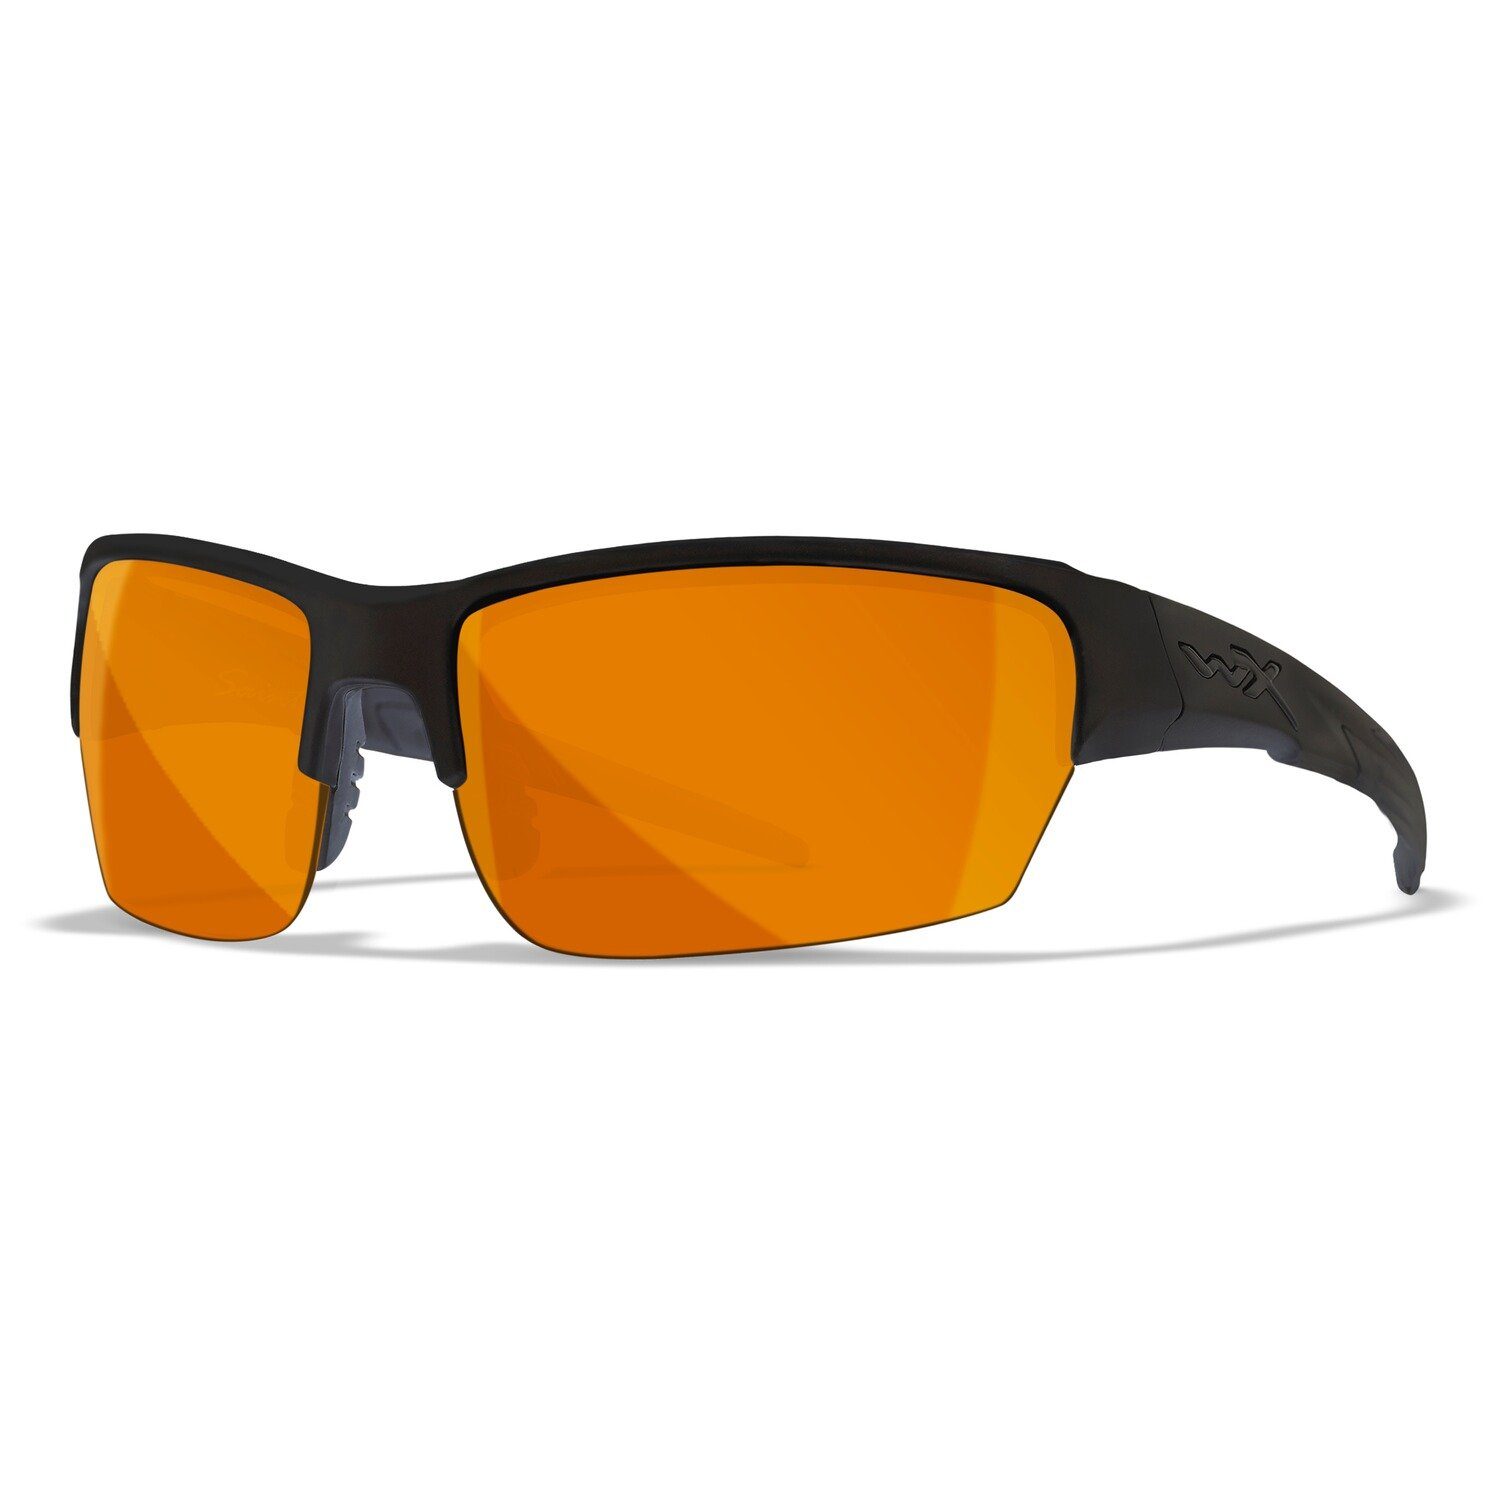 Set, Gläser: X Brille Set Wiley Sonnenbrille Saint Orange Grau/Klar/Helles WX